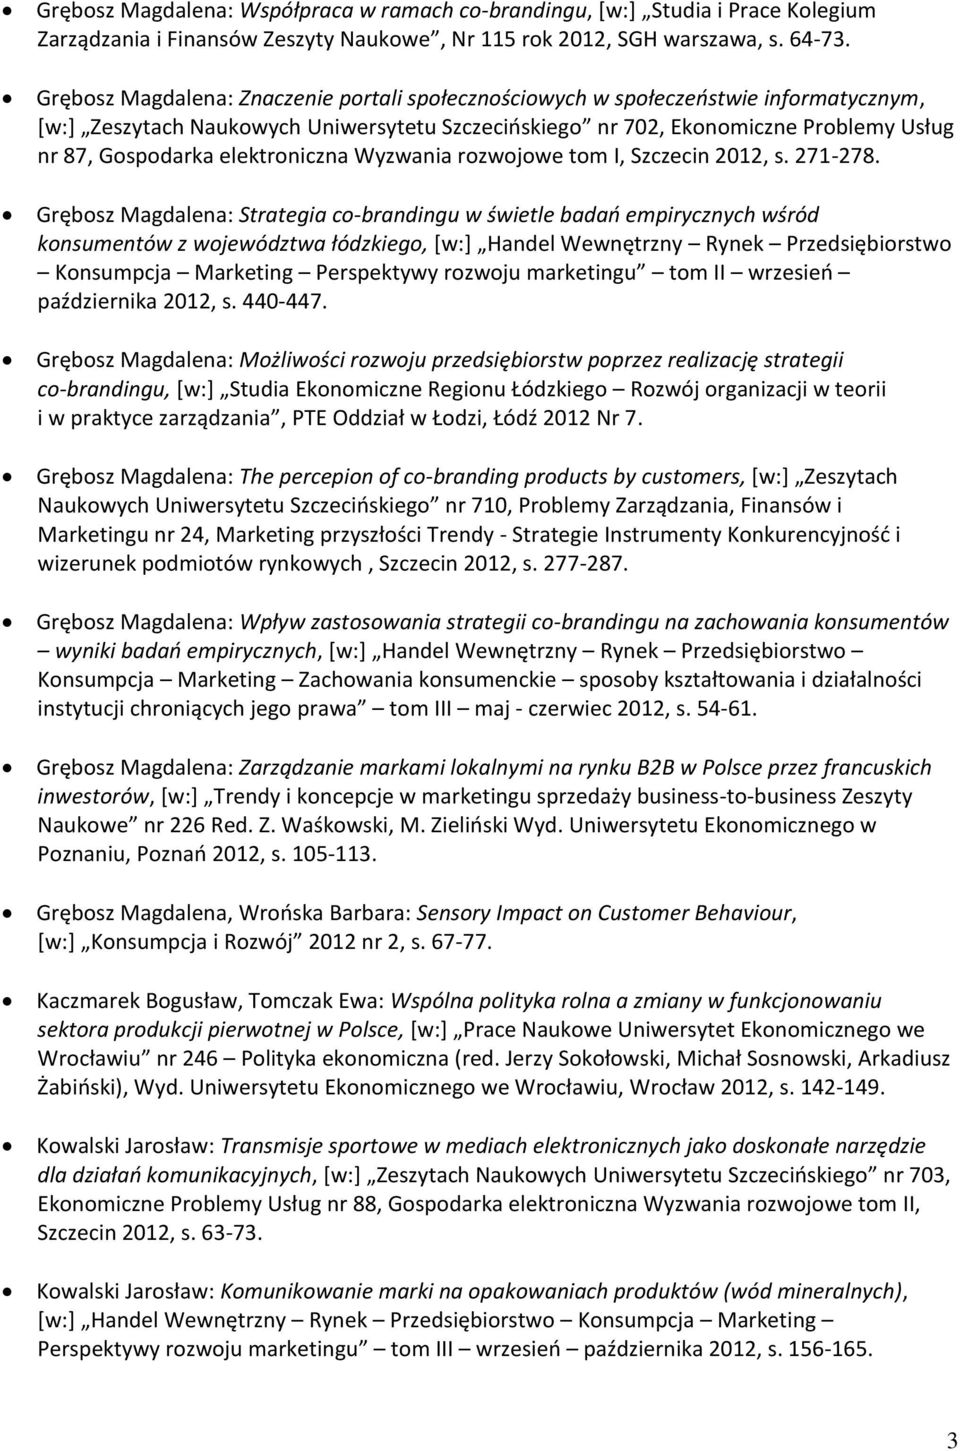 elektroniczna Wyzwania rozwojowe tom I, Szczecin 2012, s. 271-278.